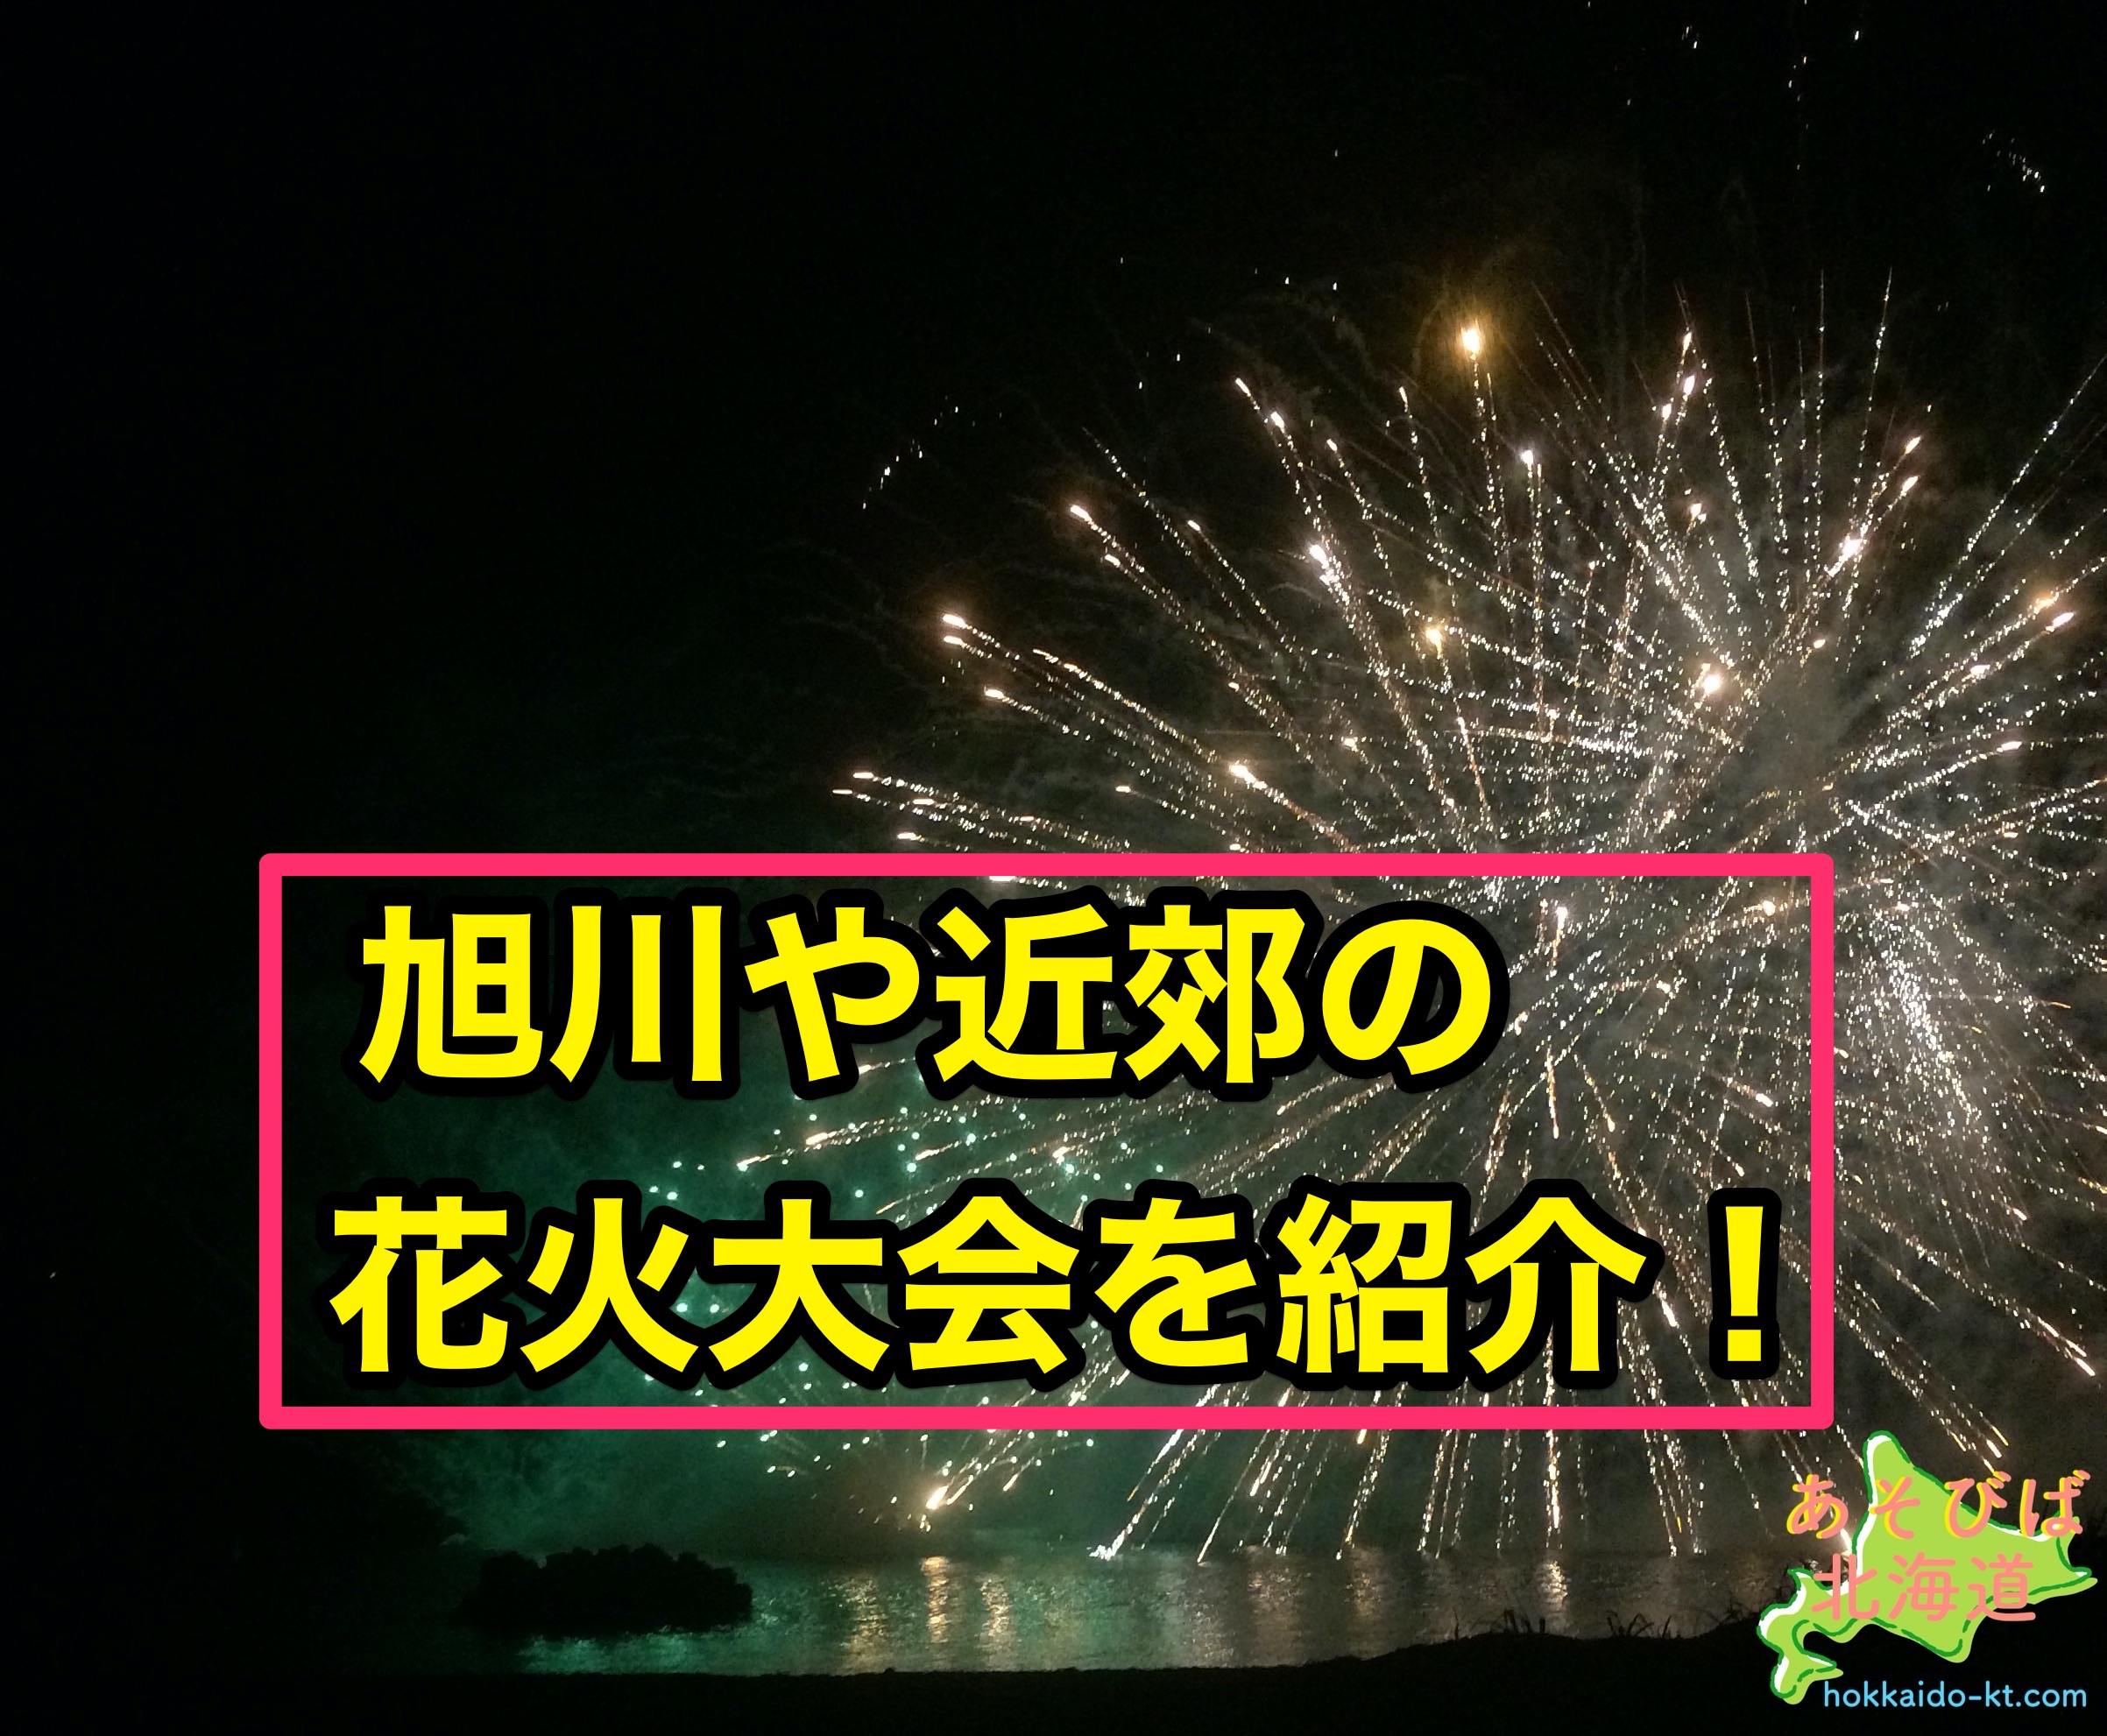 21年8月北海道のイベント情報 花火大会やお祭りも 中止情報も記載 あそびば北海道